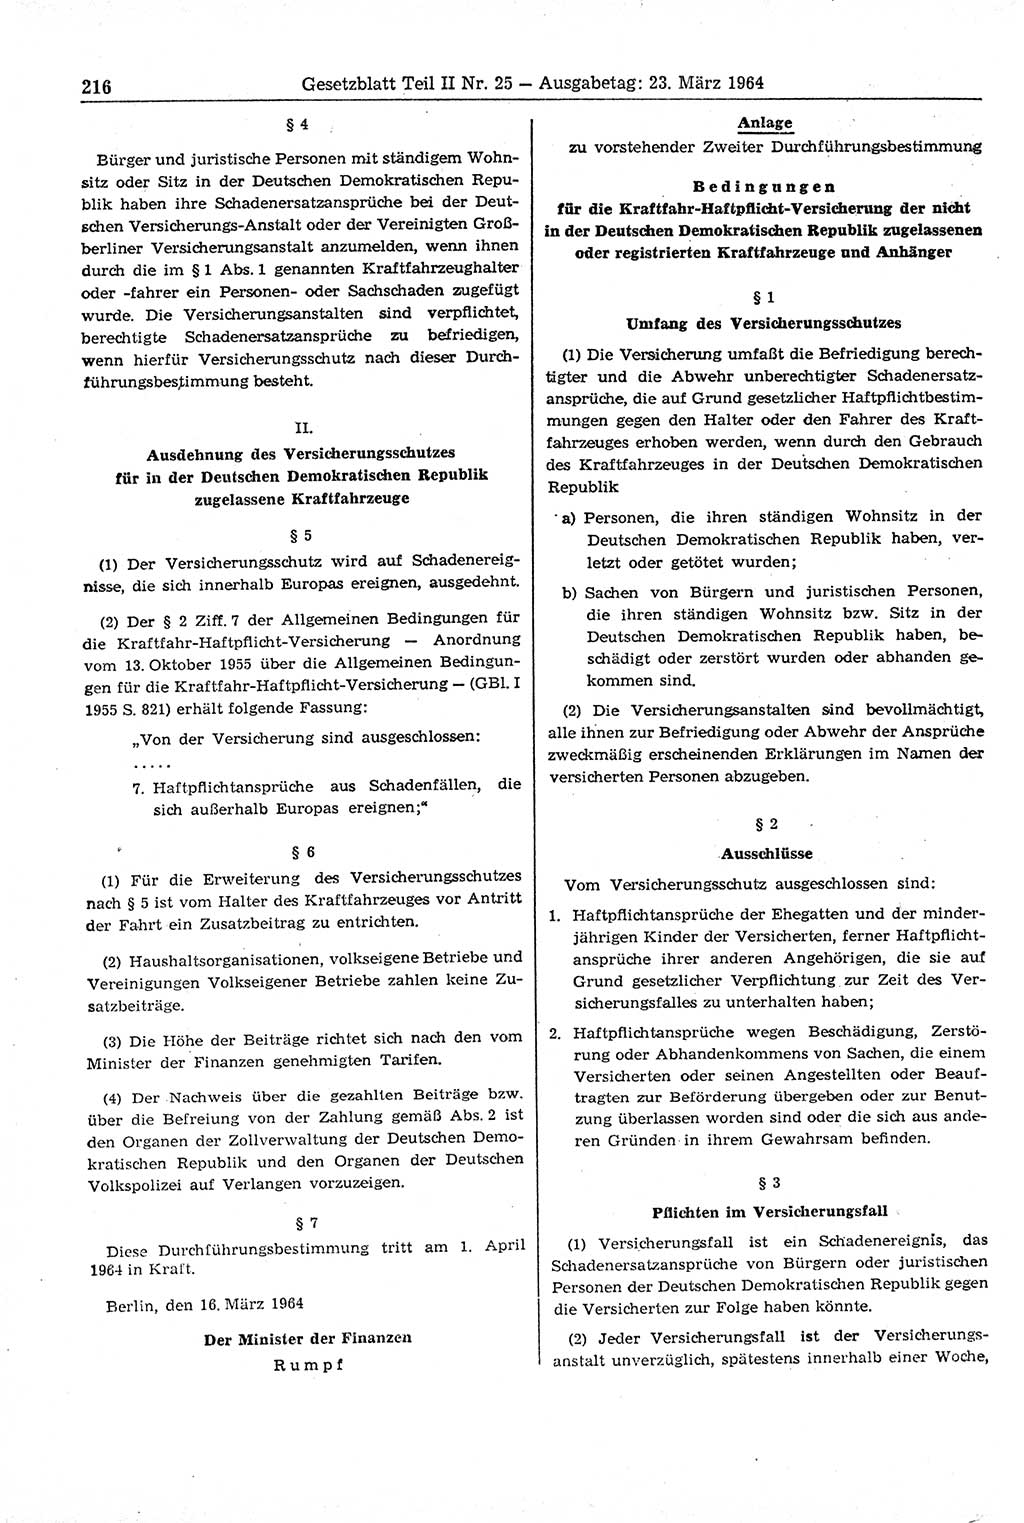 Gesetzblatt (GBl.) der Deutschen Demokratischen Republik (DDR) Teil ⅠⅠ 1964, Seite 216 (GBl. DDR ⅠⅠ 1964, S. 216)